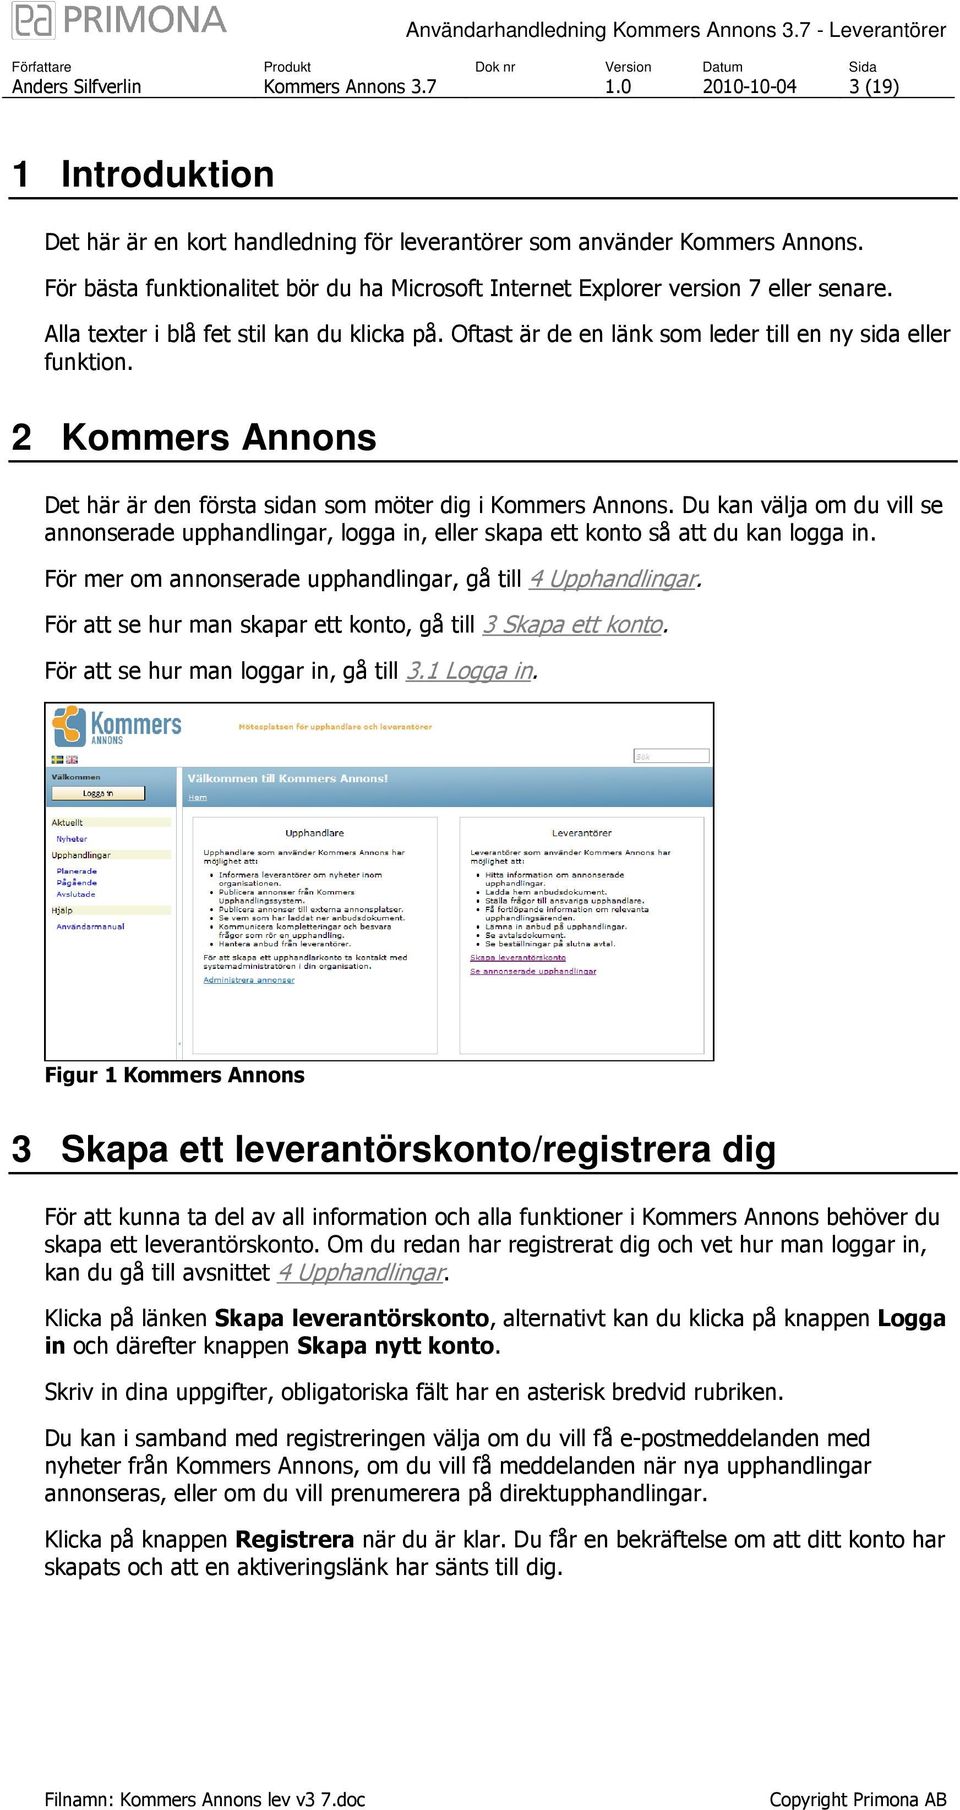 2 Kommers Annons Det här är den första sidan som möter dig i Kommers Annons. Du kan välja om du vill se annonserade upphandlingar, logga in, eller skapa ett konto så att du kan logga in.